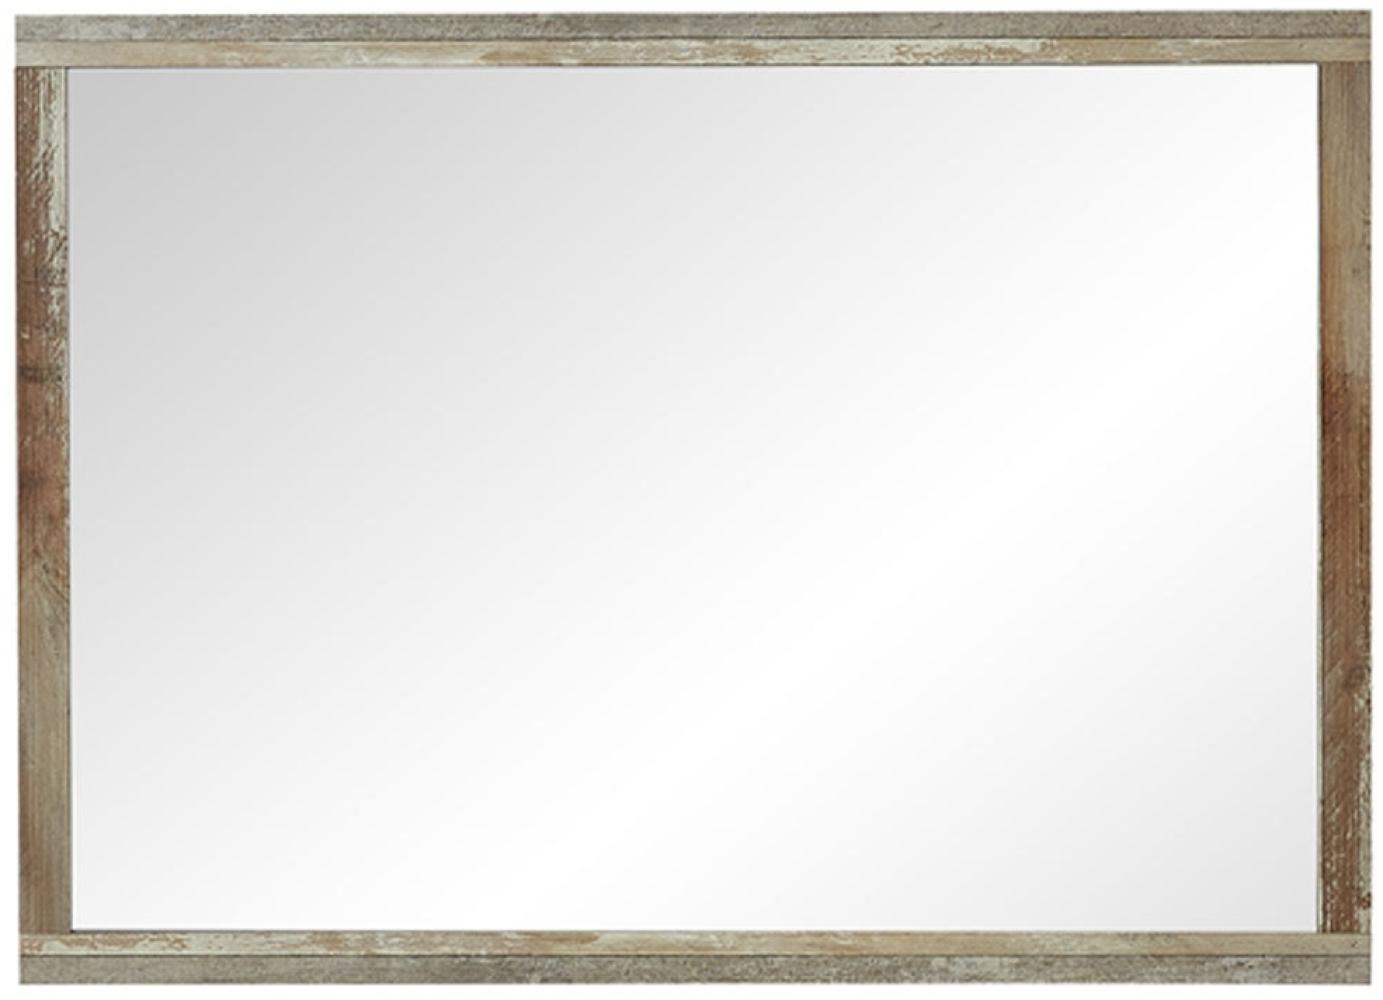 Möbel-Eins BALI Spiegel 98x70 cm, Material Dekorspanplatte, braun Bild 1